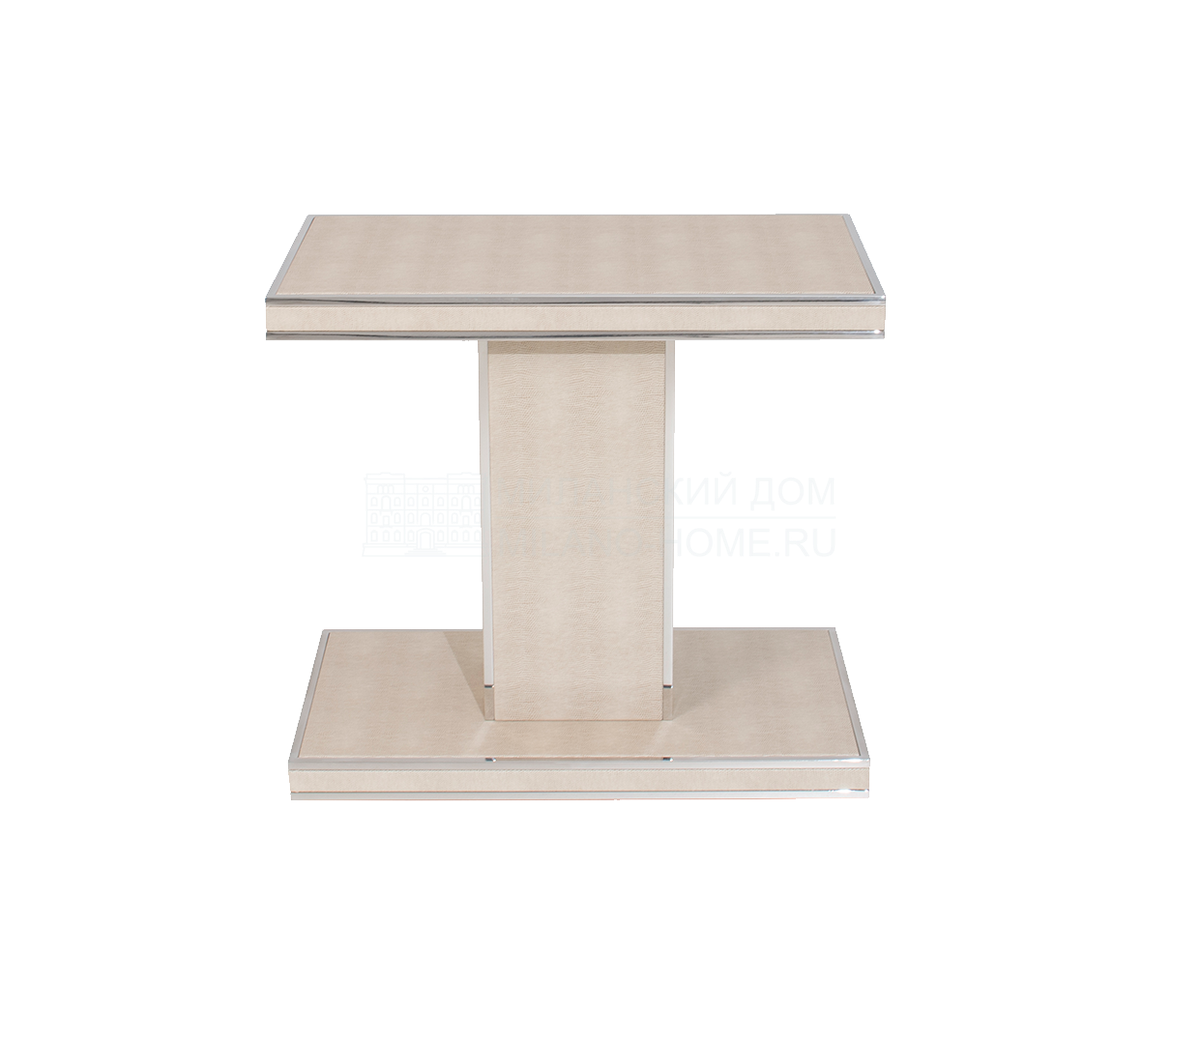 Кофейный столик Cleef side table из Португалии фабрики FRATO